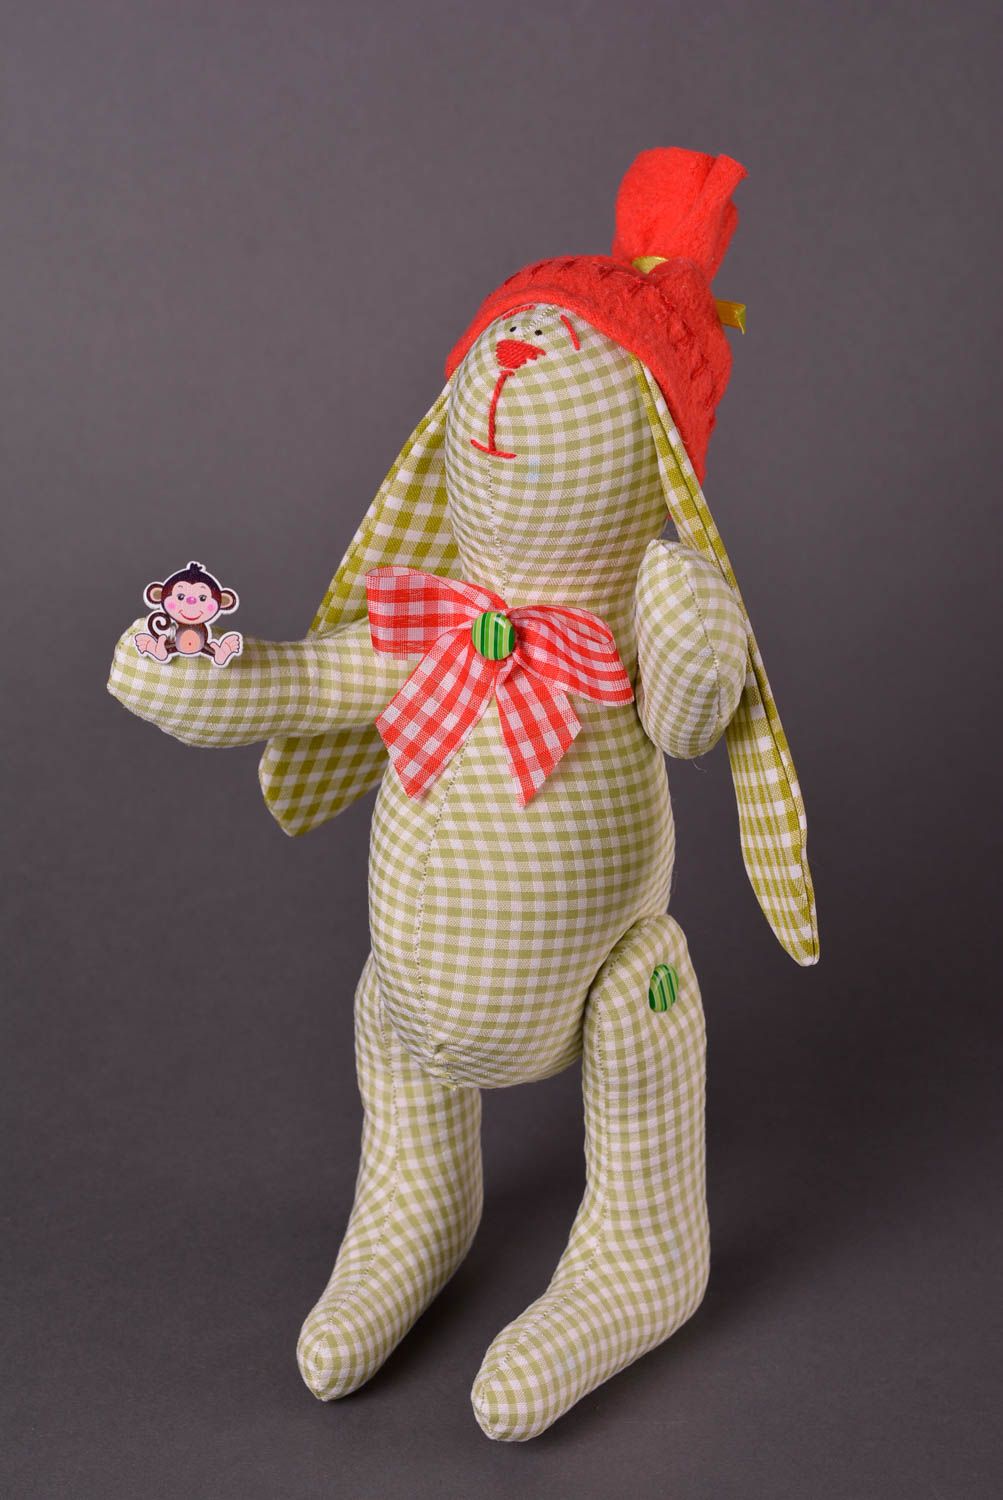 Авторская игрушка ручной работы игрушка заяц из ткани стильный подарок фото 1